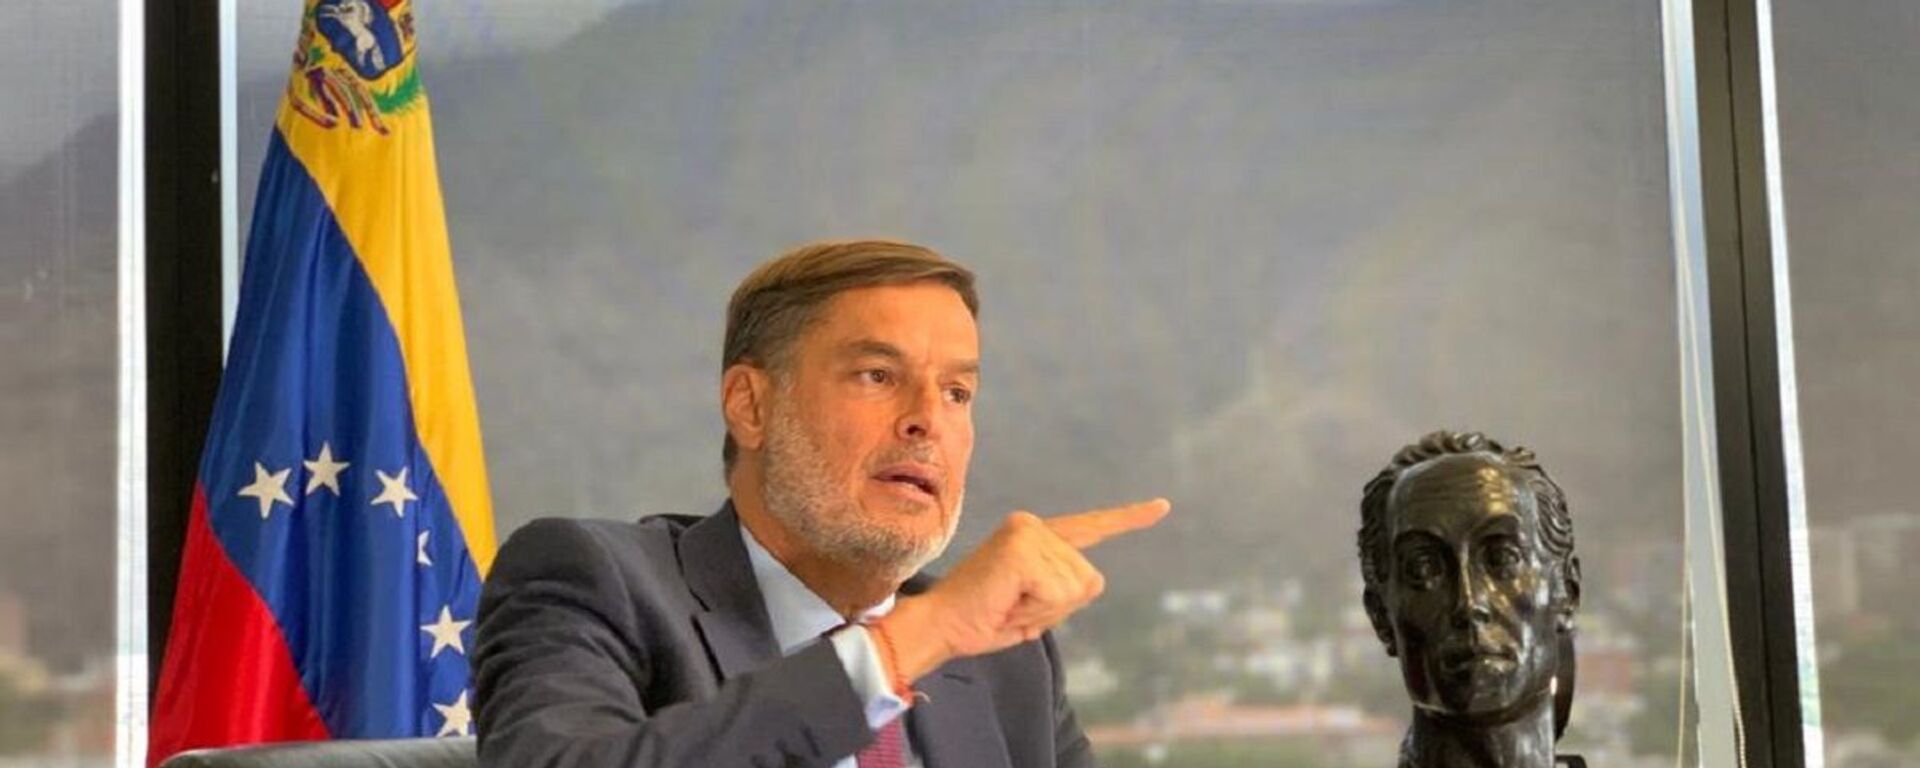 Félix Plasencia, el ministro del Poder Popular para el Turismo y Comercio Exterior de Venezuela - Sputnik Mundo, 1920, 27.09.2021